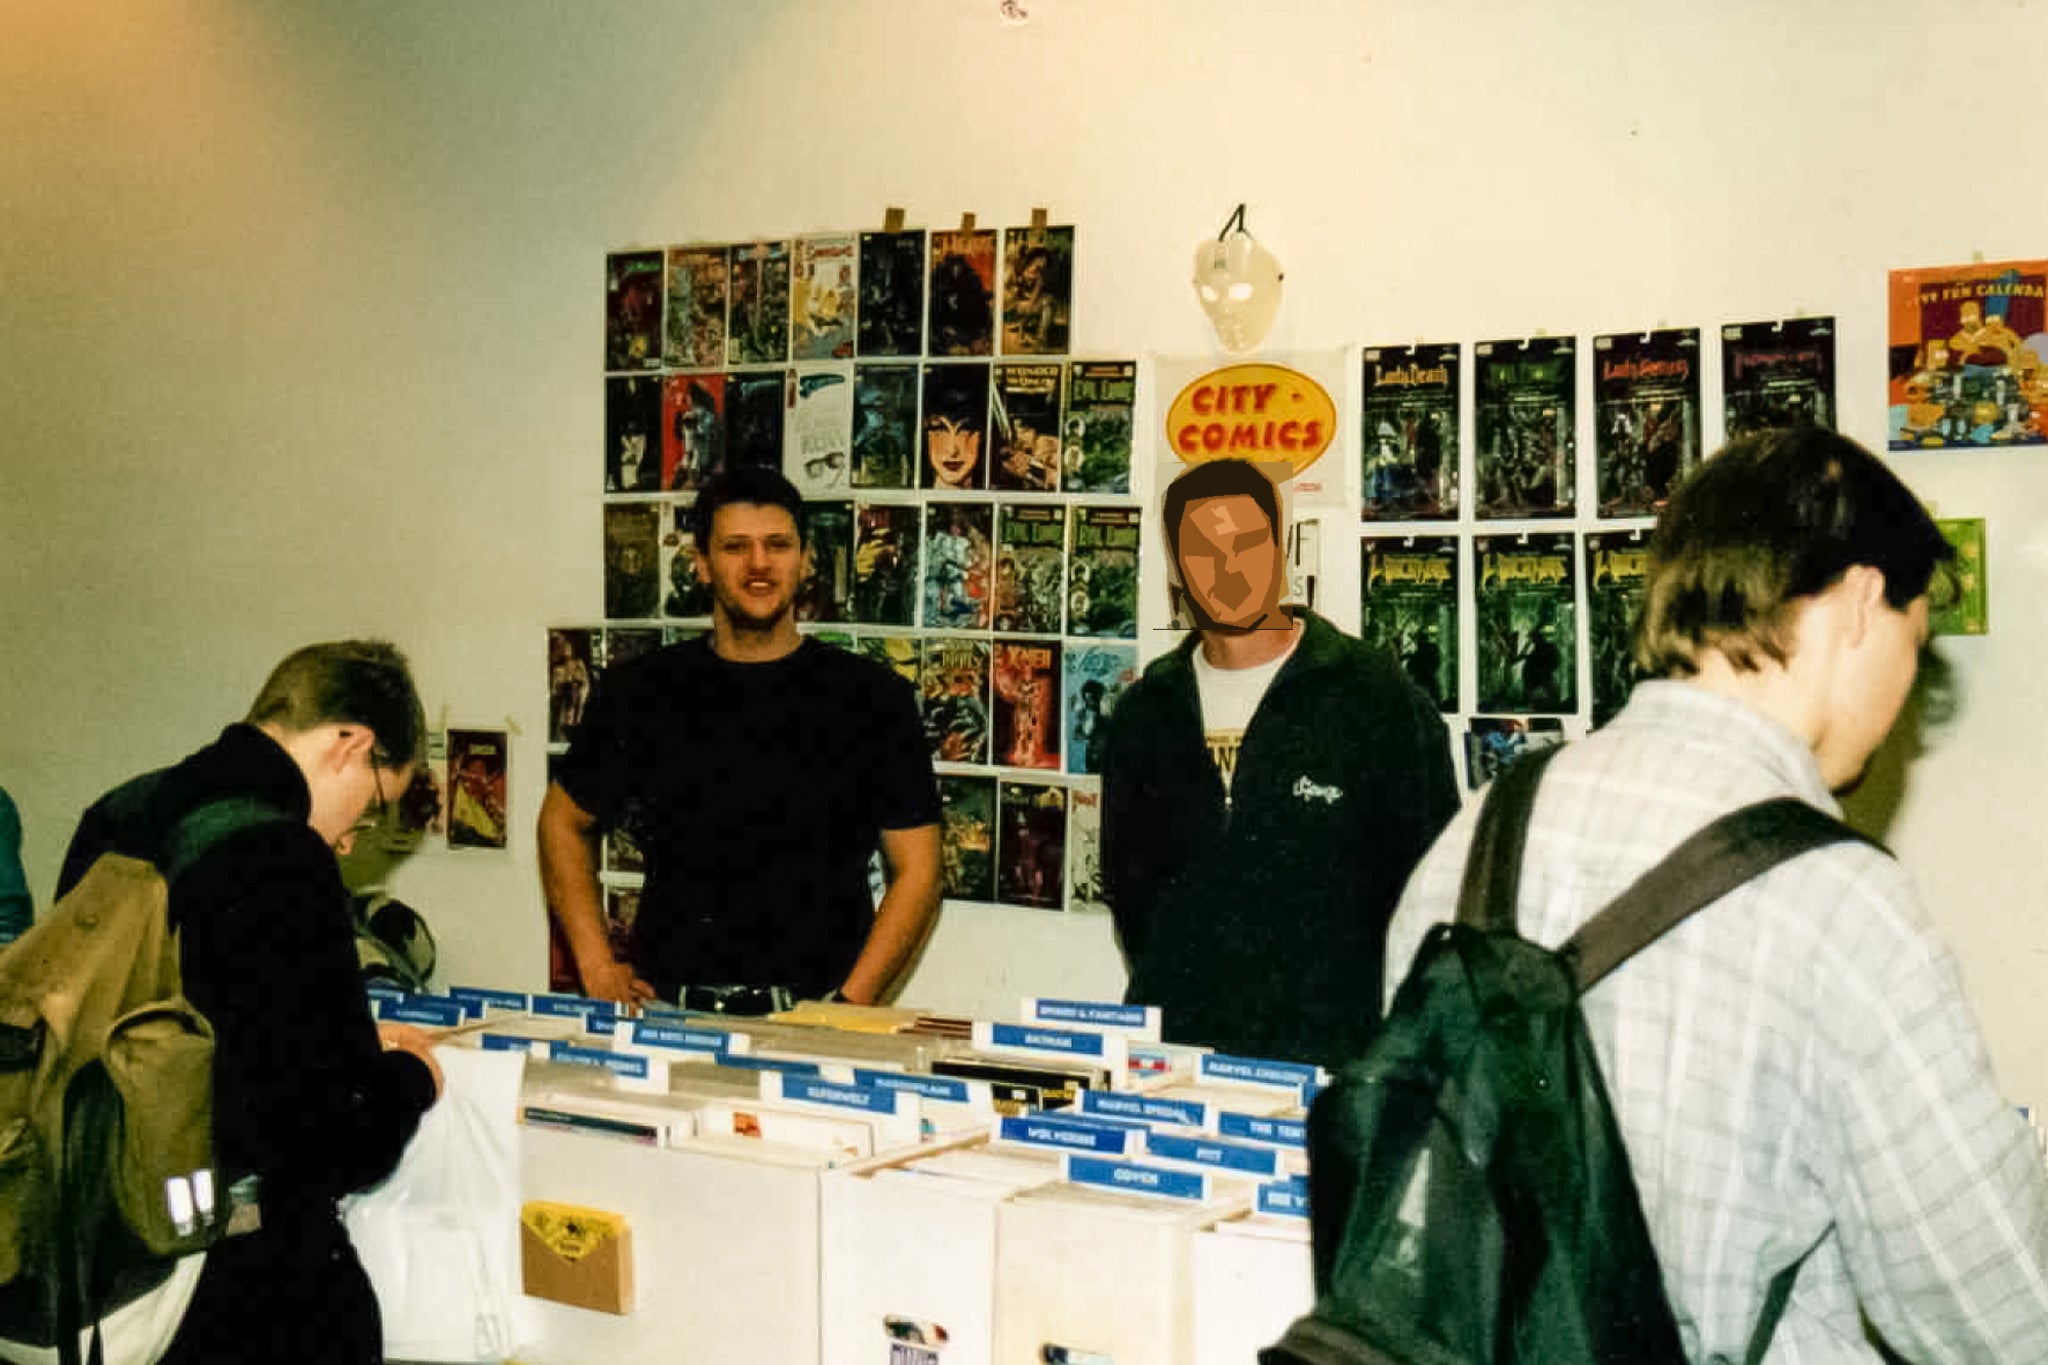 City Comics Ladenlokal aus den 2000er Jahren